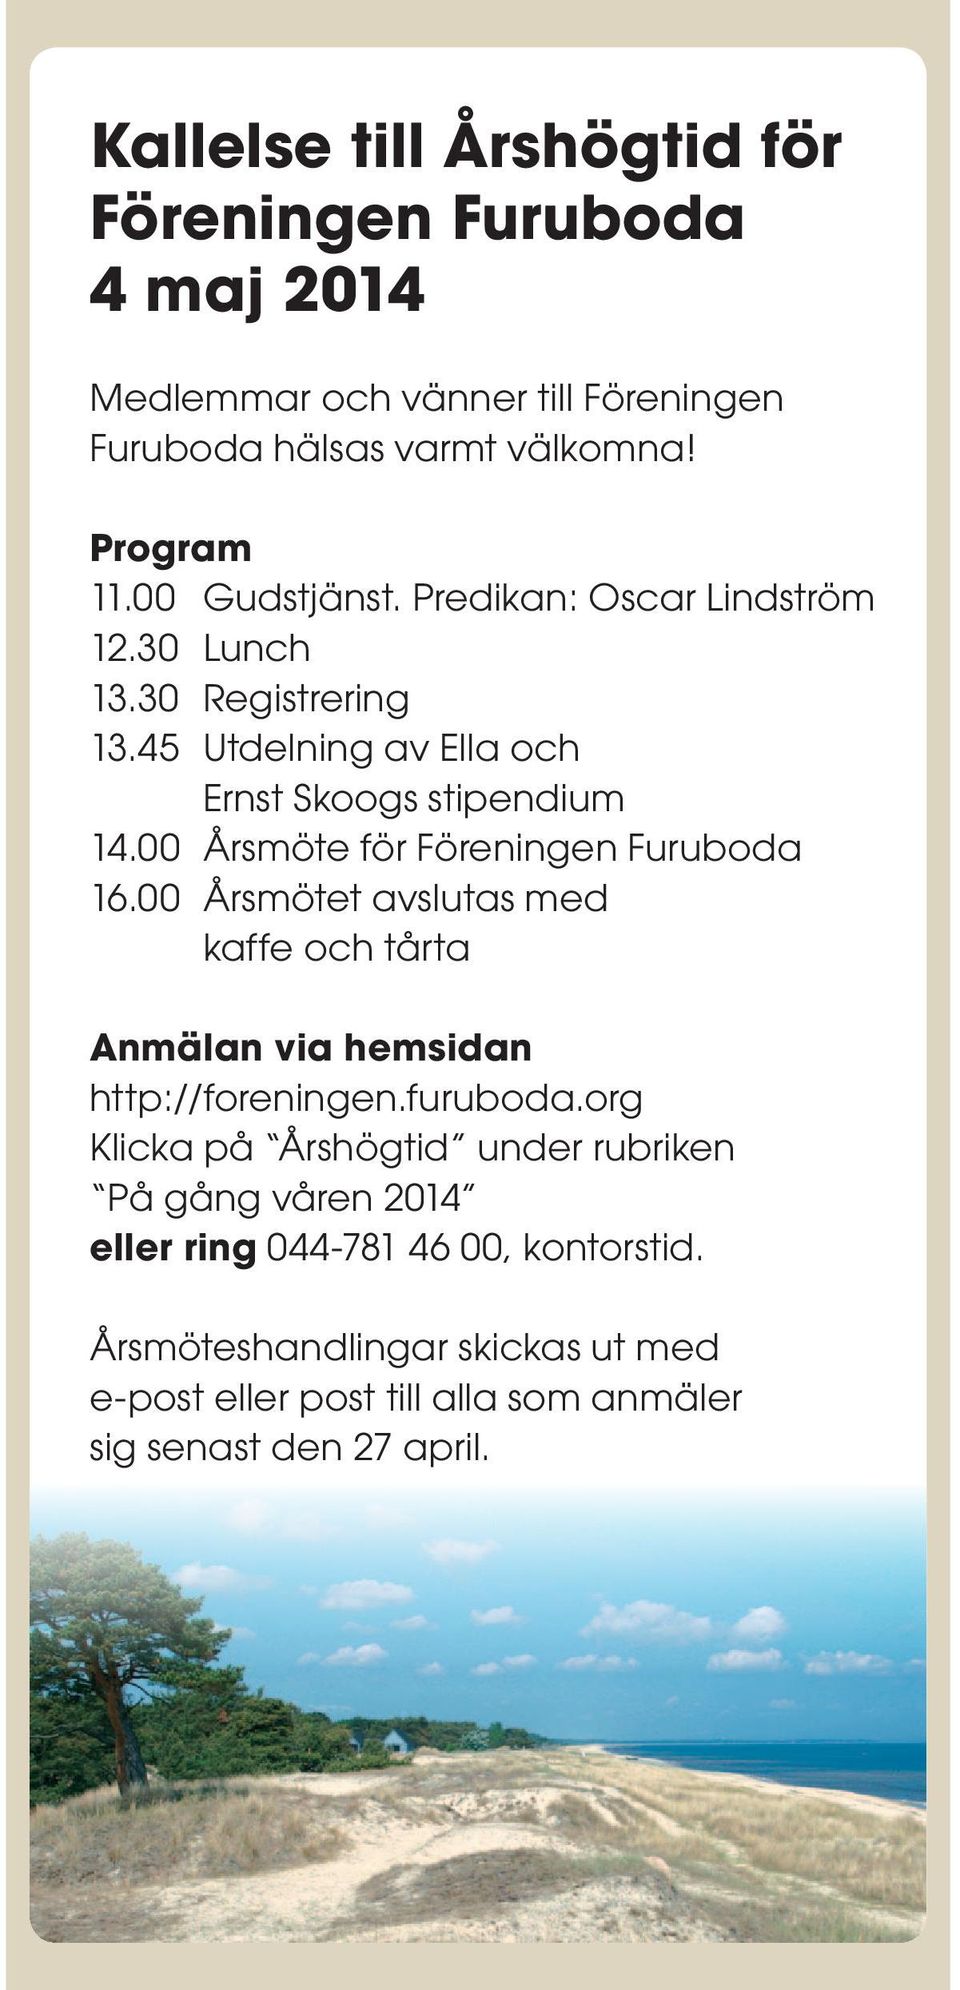 00 Årsmöte för Föreningen Furuboda 16.00 Årsmötet avslutas med kaffe och tårta Anmälan via hemsidan http://foreningen.furuboda.